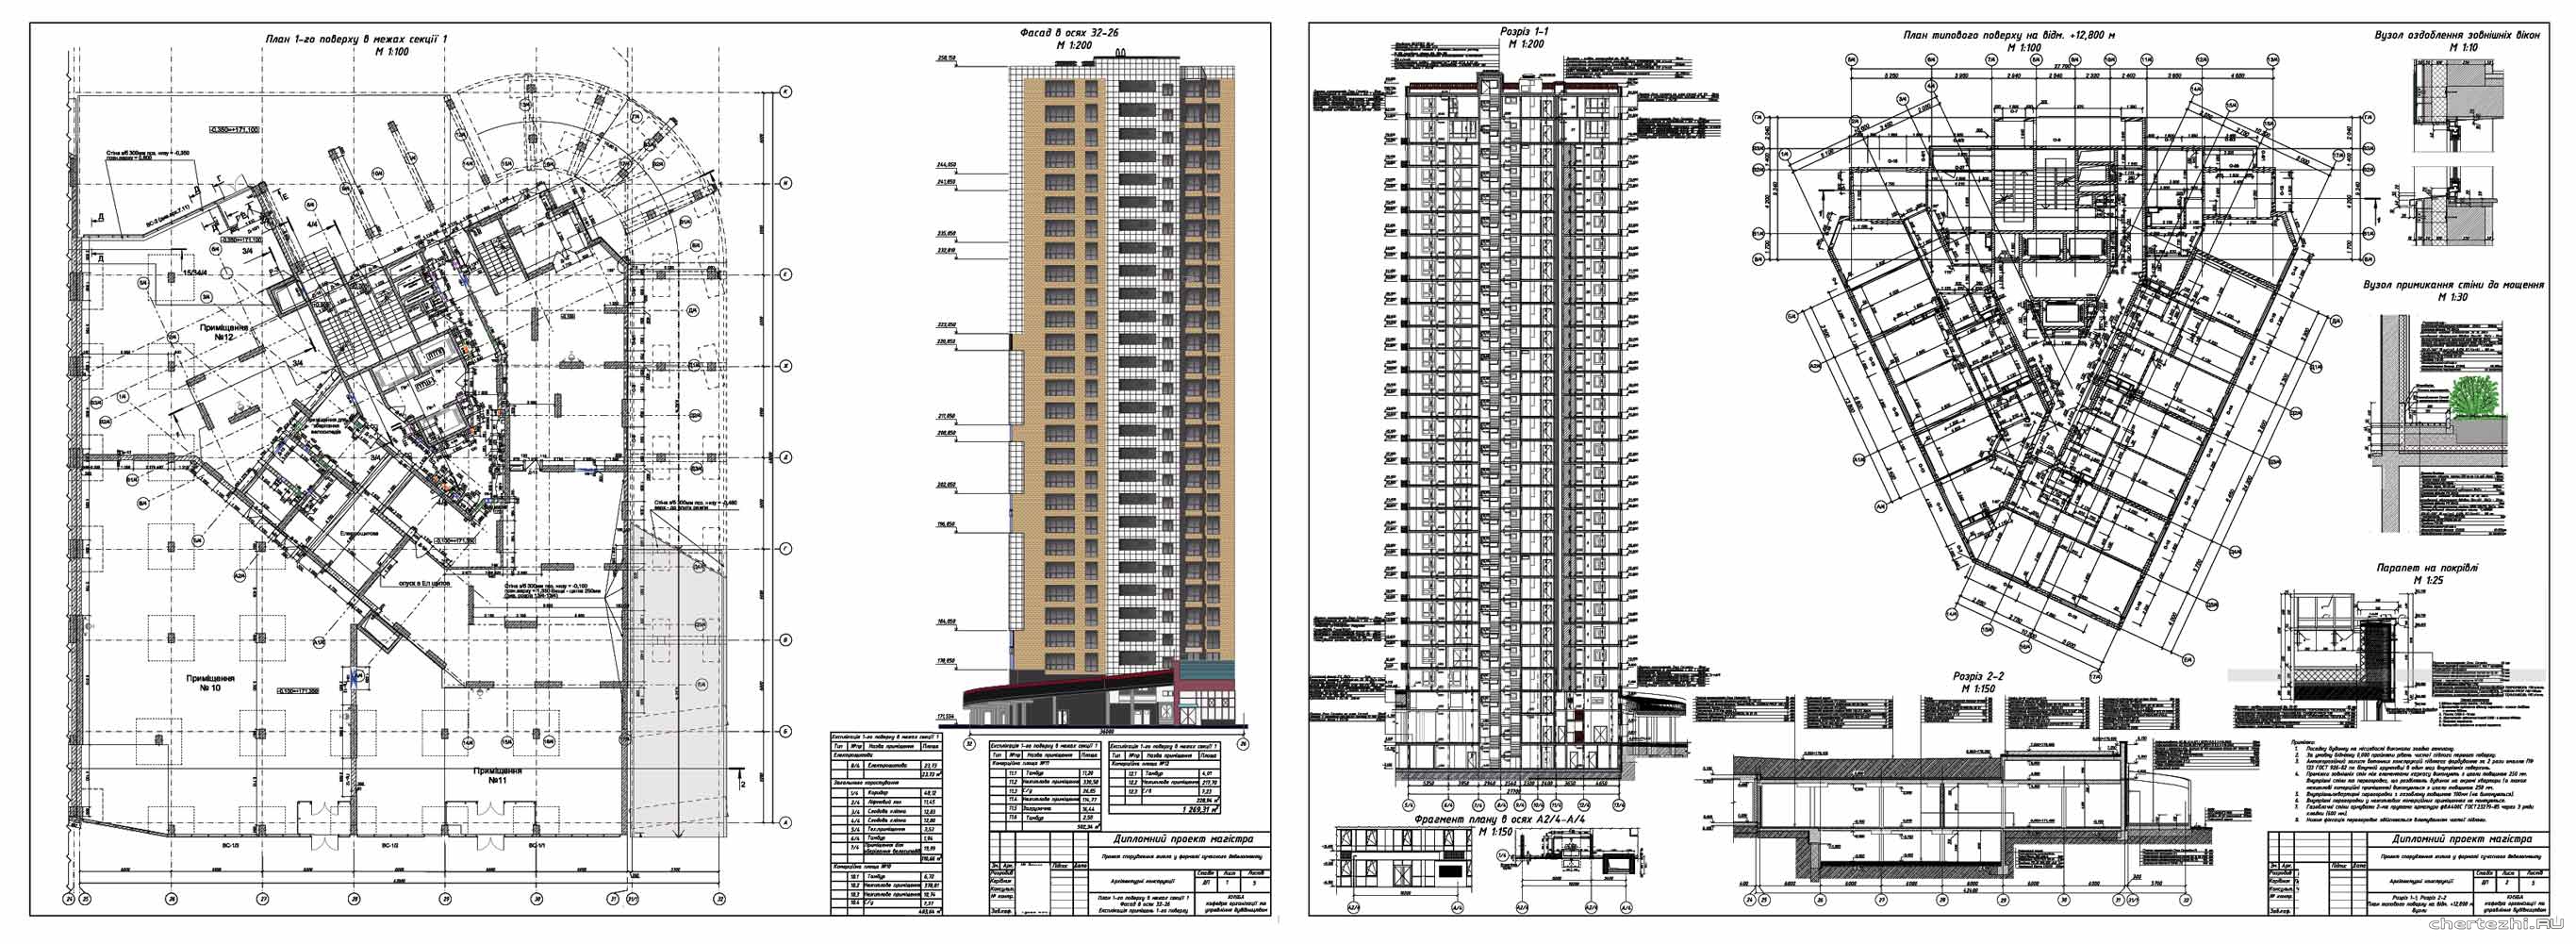 Дипломний проект - Організація будівельного виробництва на основі проекту 28-ми поверхового монолітно-каркасного житлового будинку в м. Київ